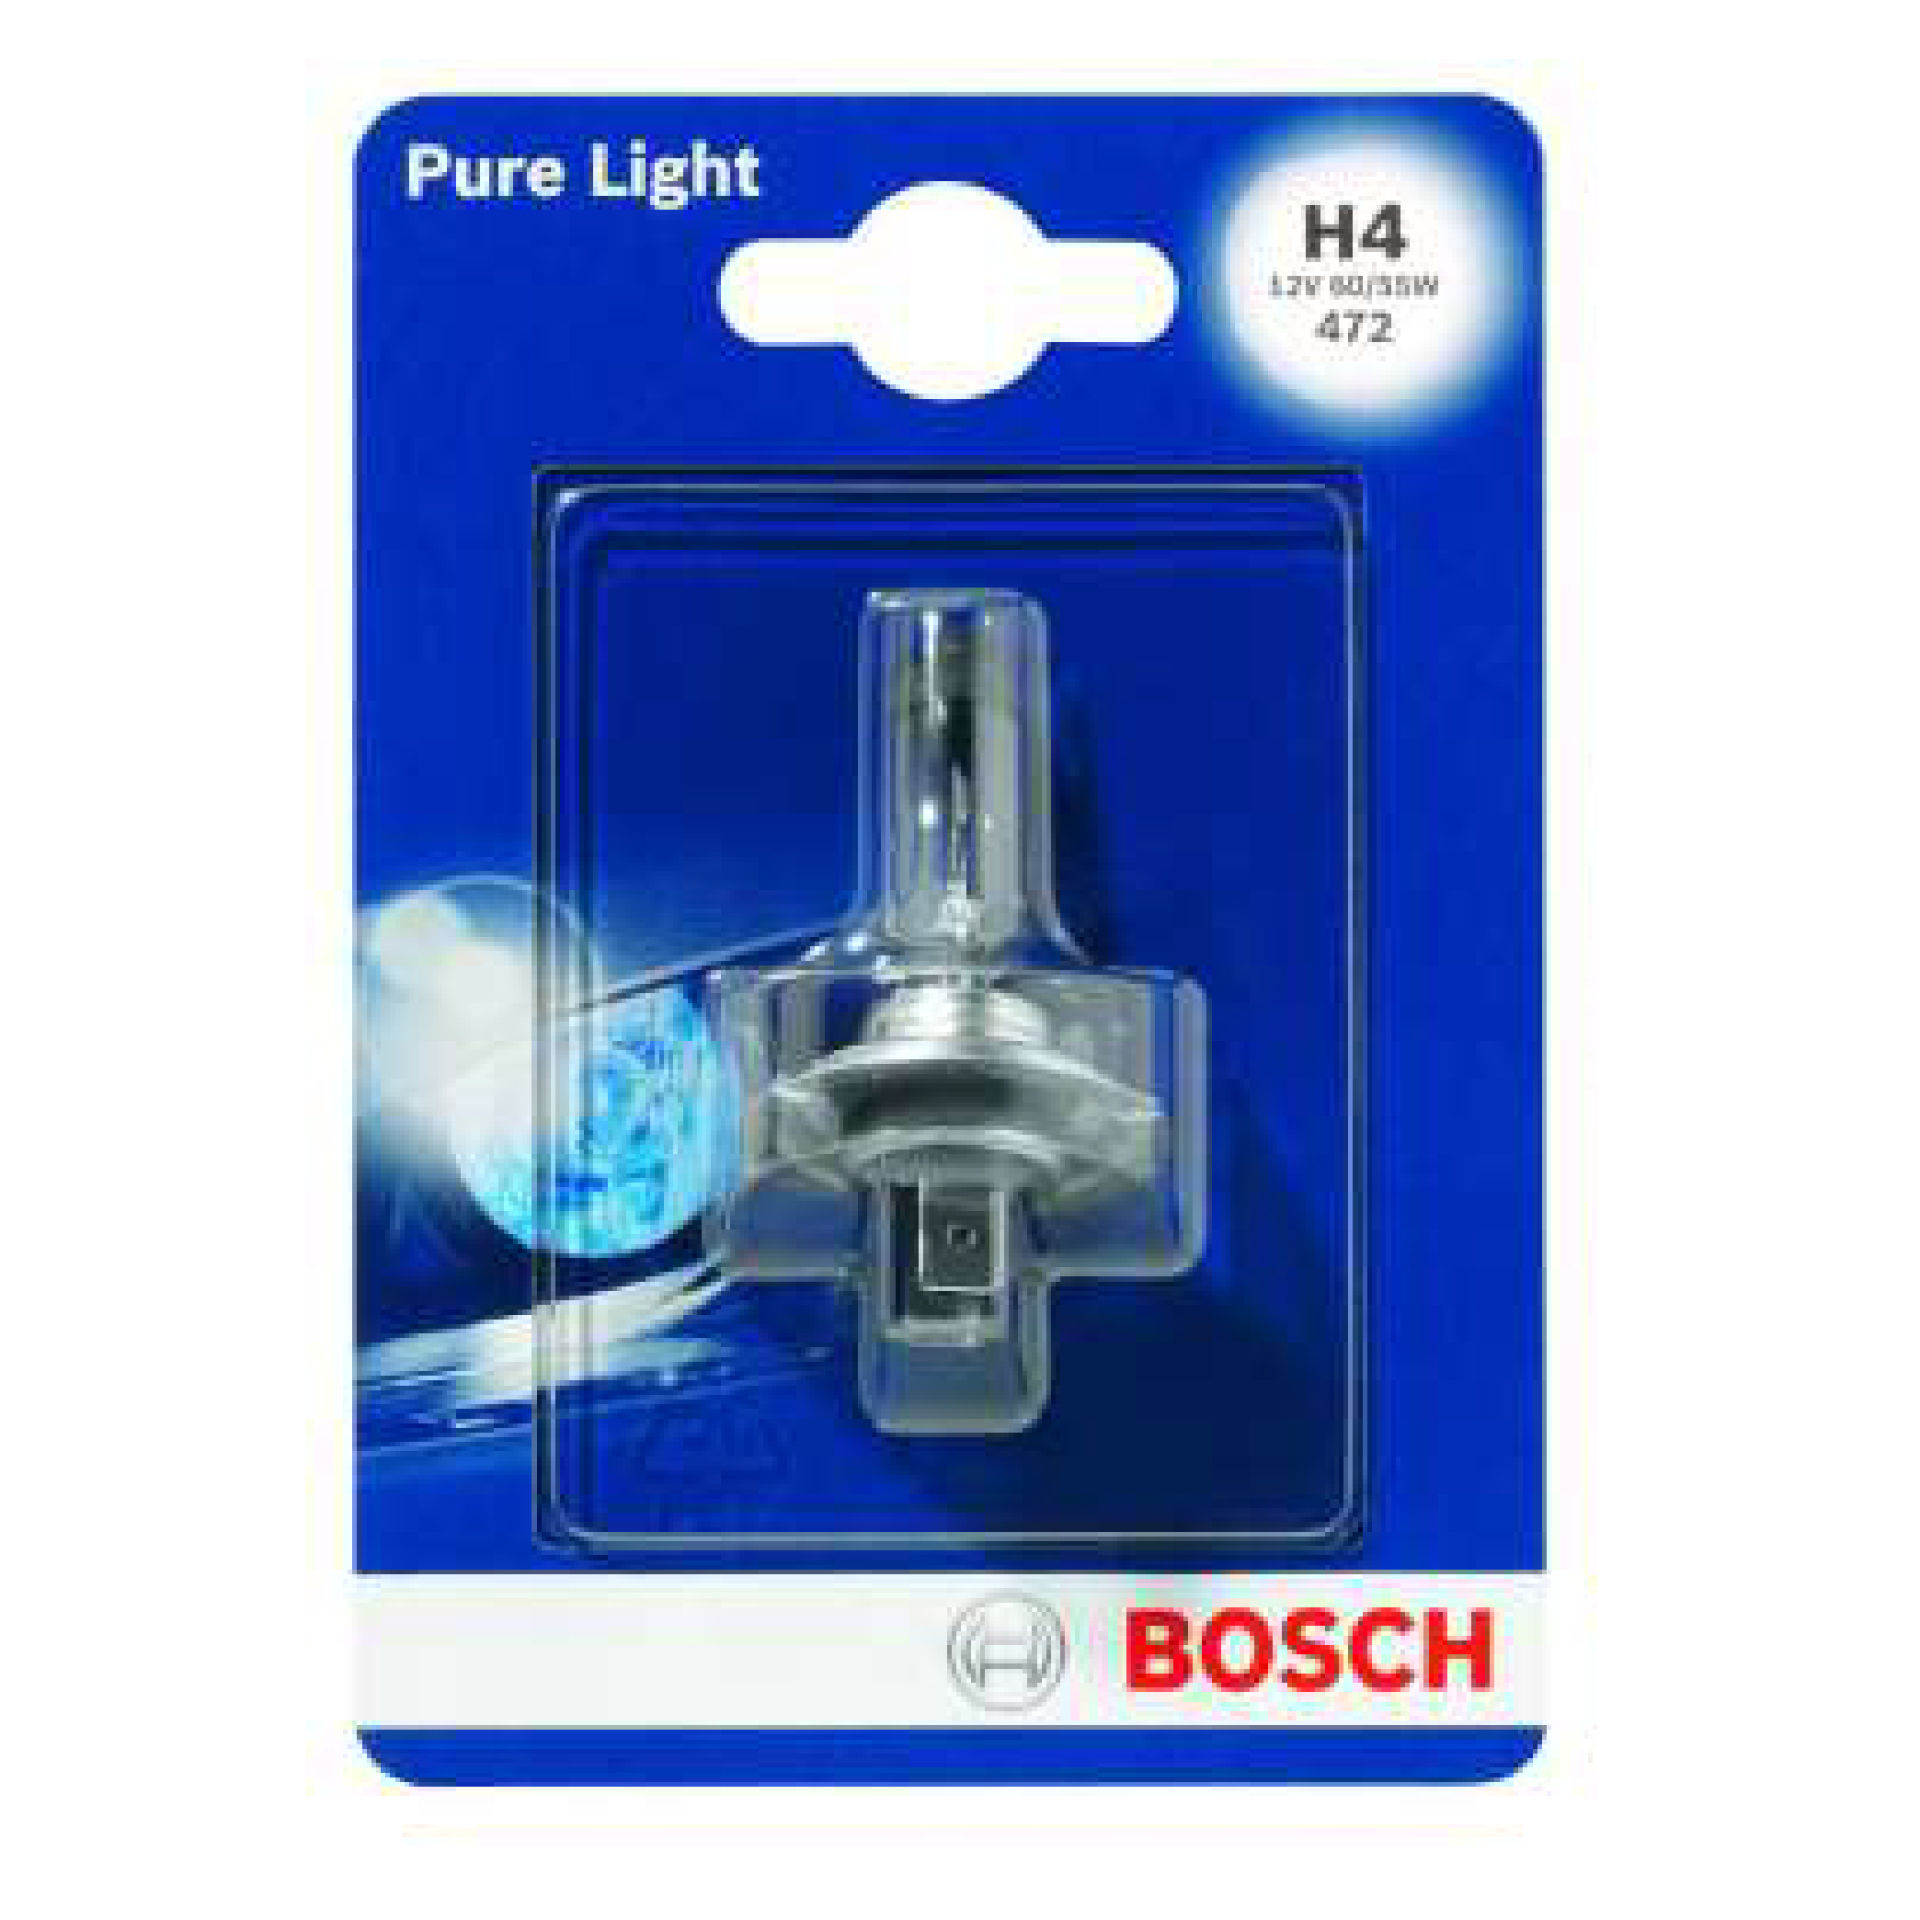 BOSCH 1 LAMP H4 001Bosch